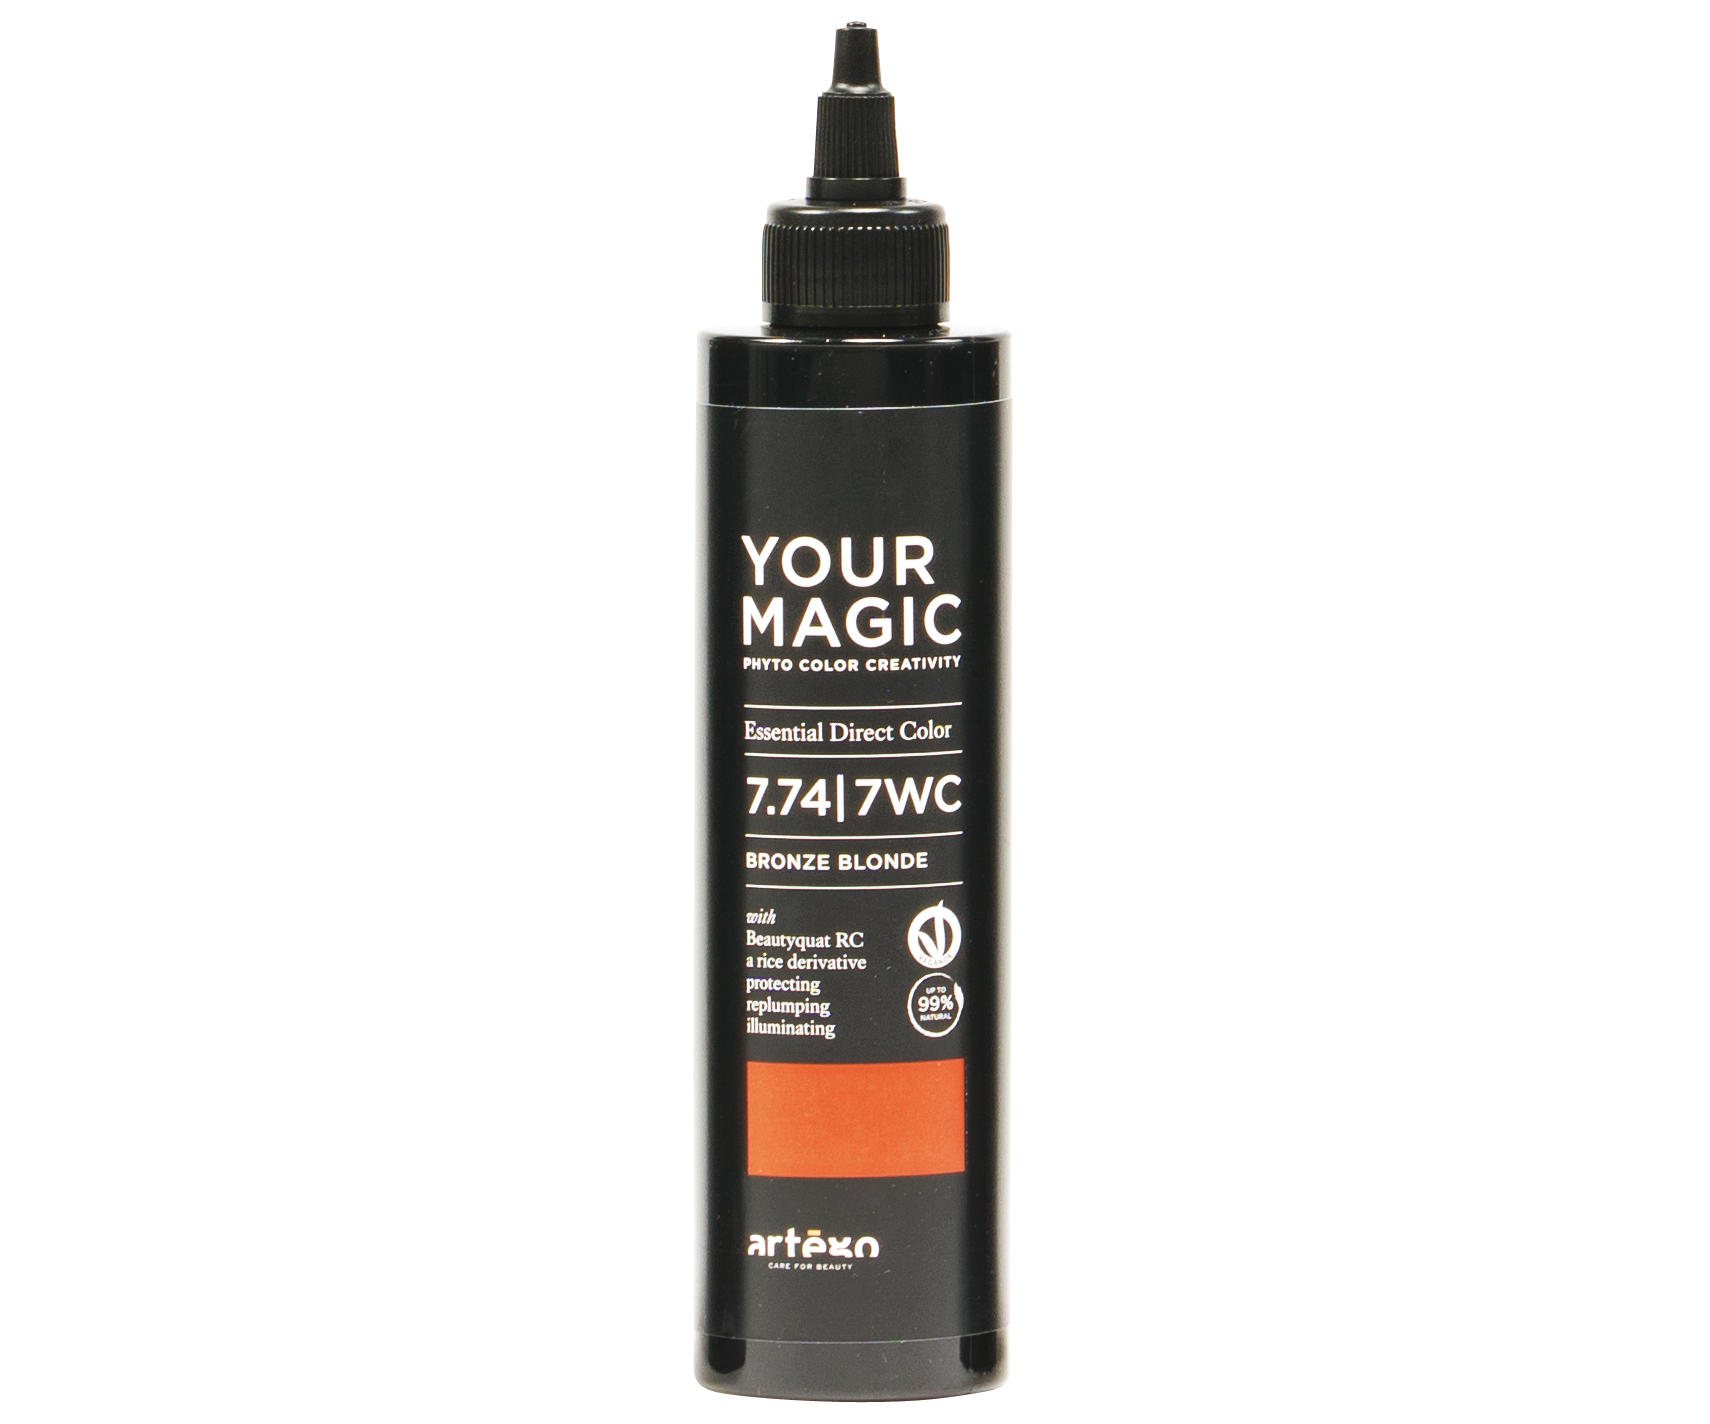 Tónující pigmenty na vlasy Artégo Your Magic 7.74 | 7WC - 200 ml, bronzová (0165258) + dárek zdarma